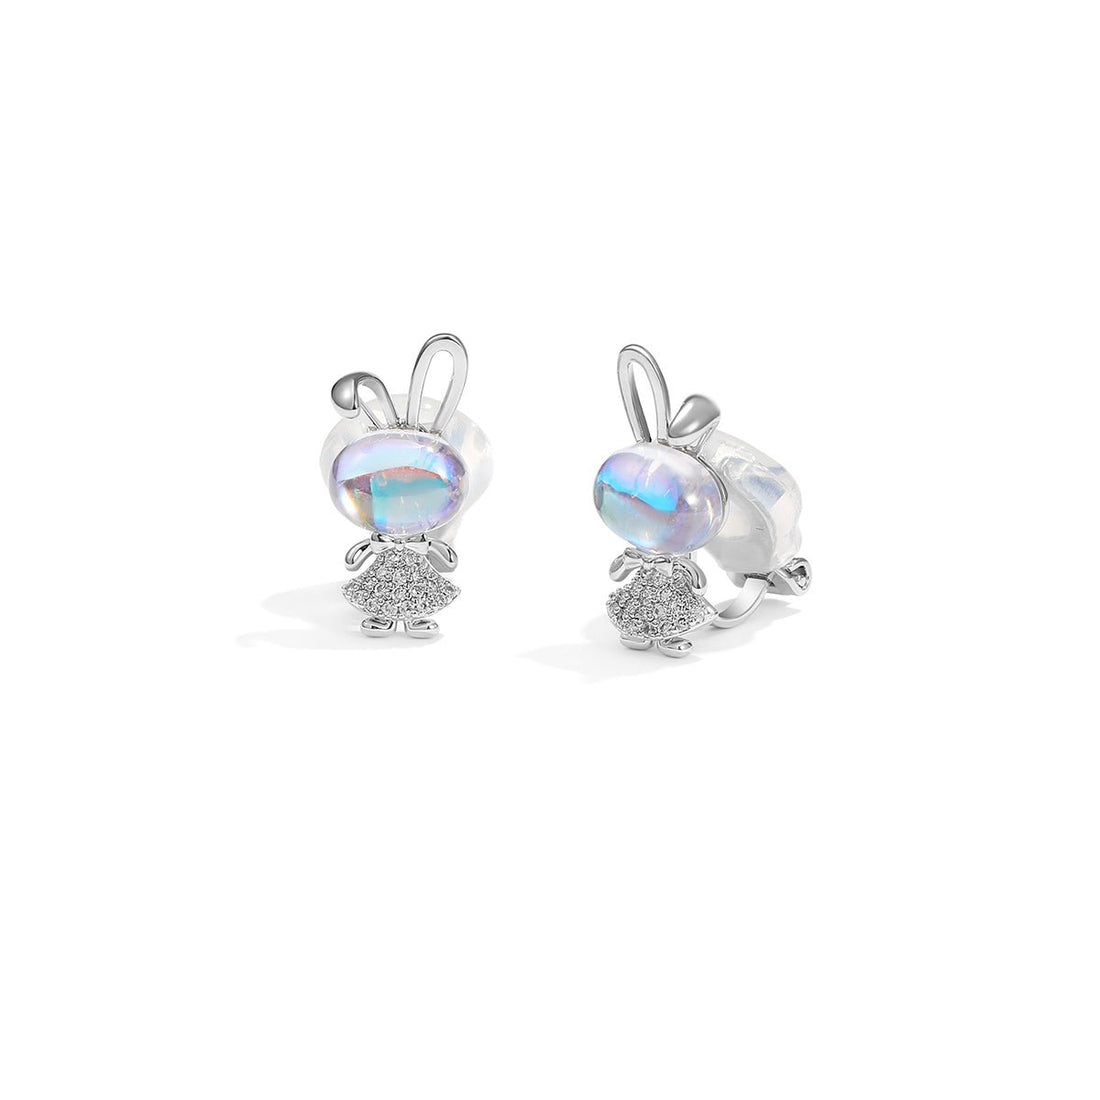 Party Rabbit Silver Earrings - 0cm